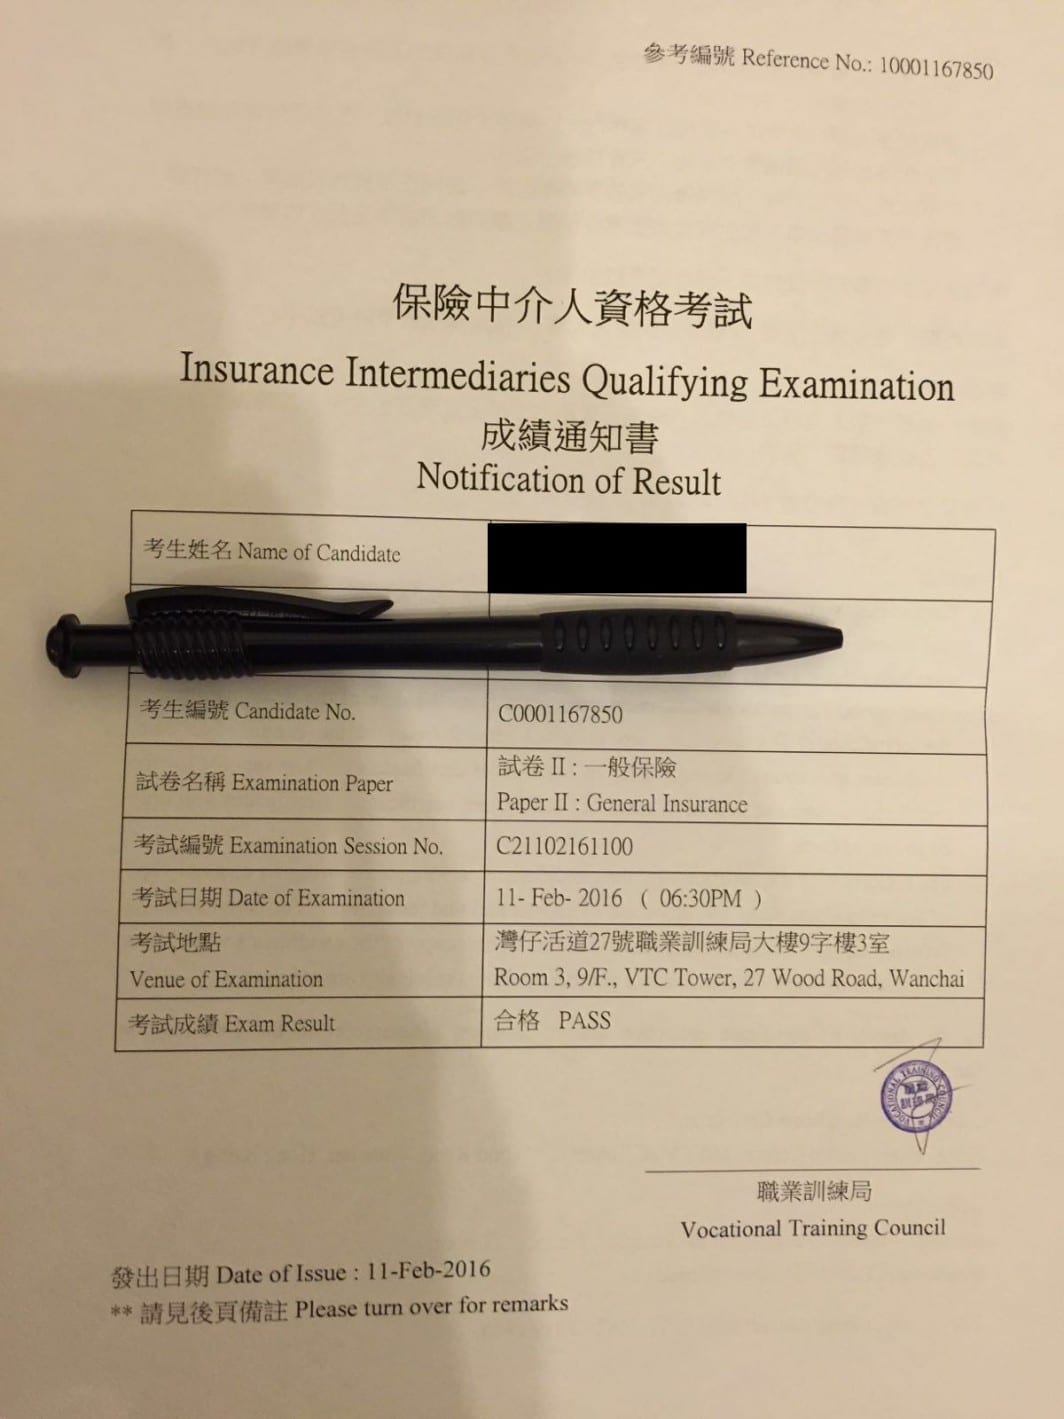 Vincentcheong 11/2/2016 IIQE Paper 2 保險中介人資格考試卷二 Pass